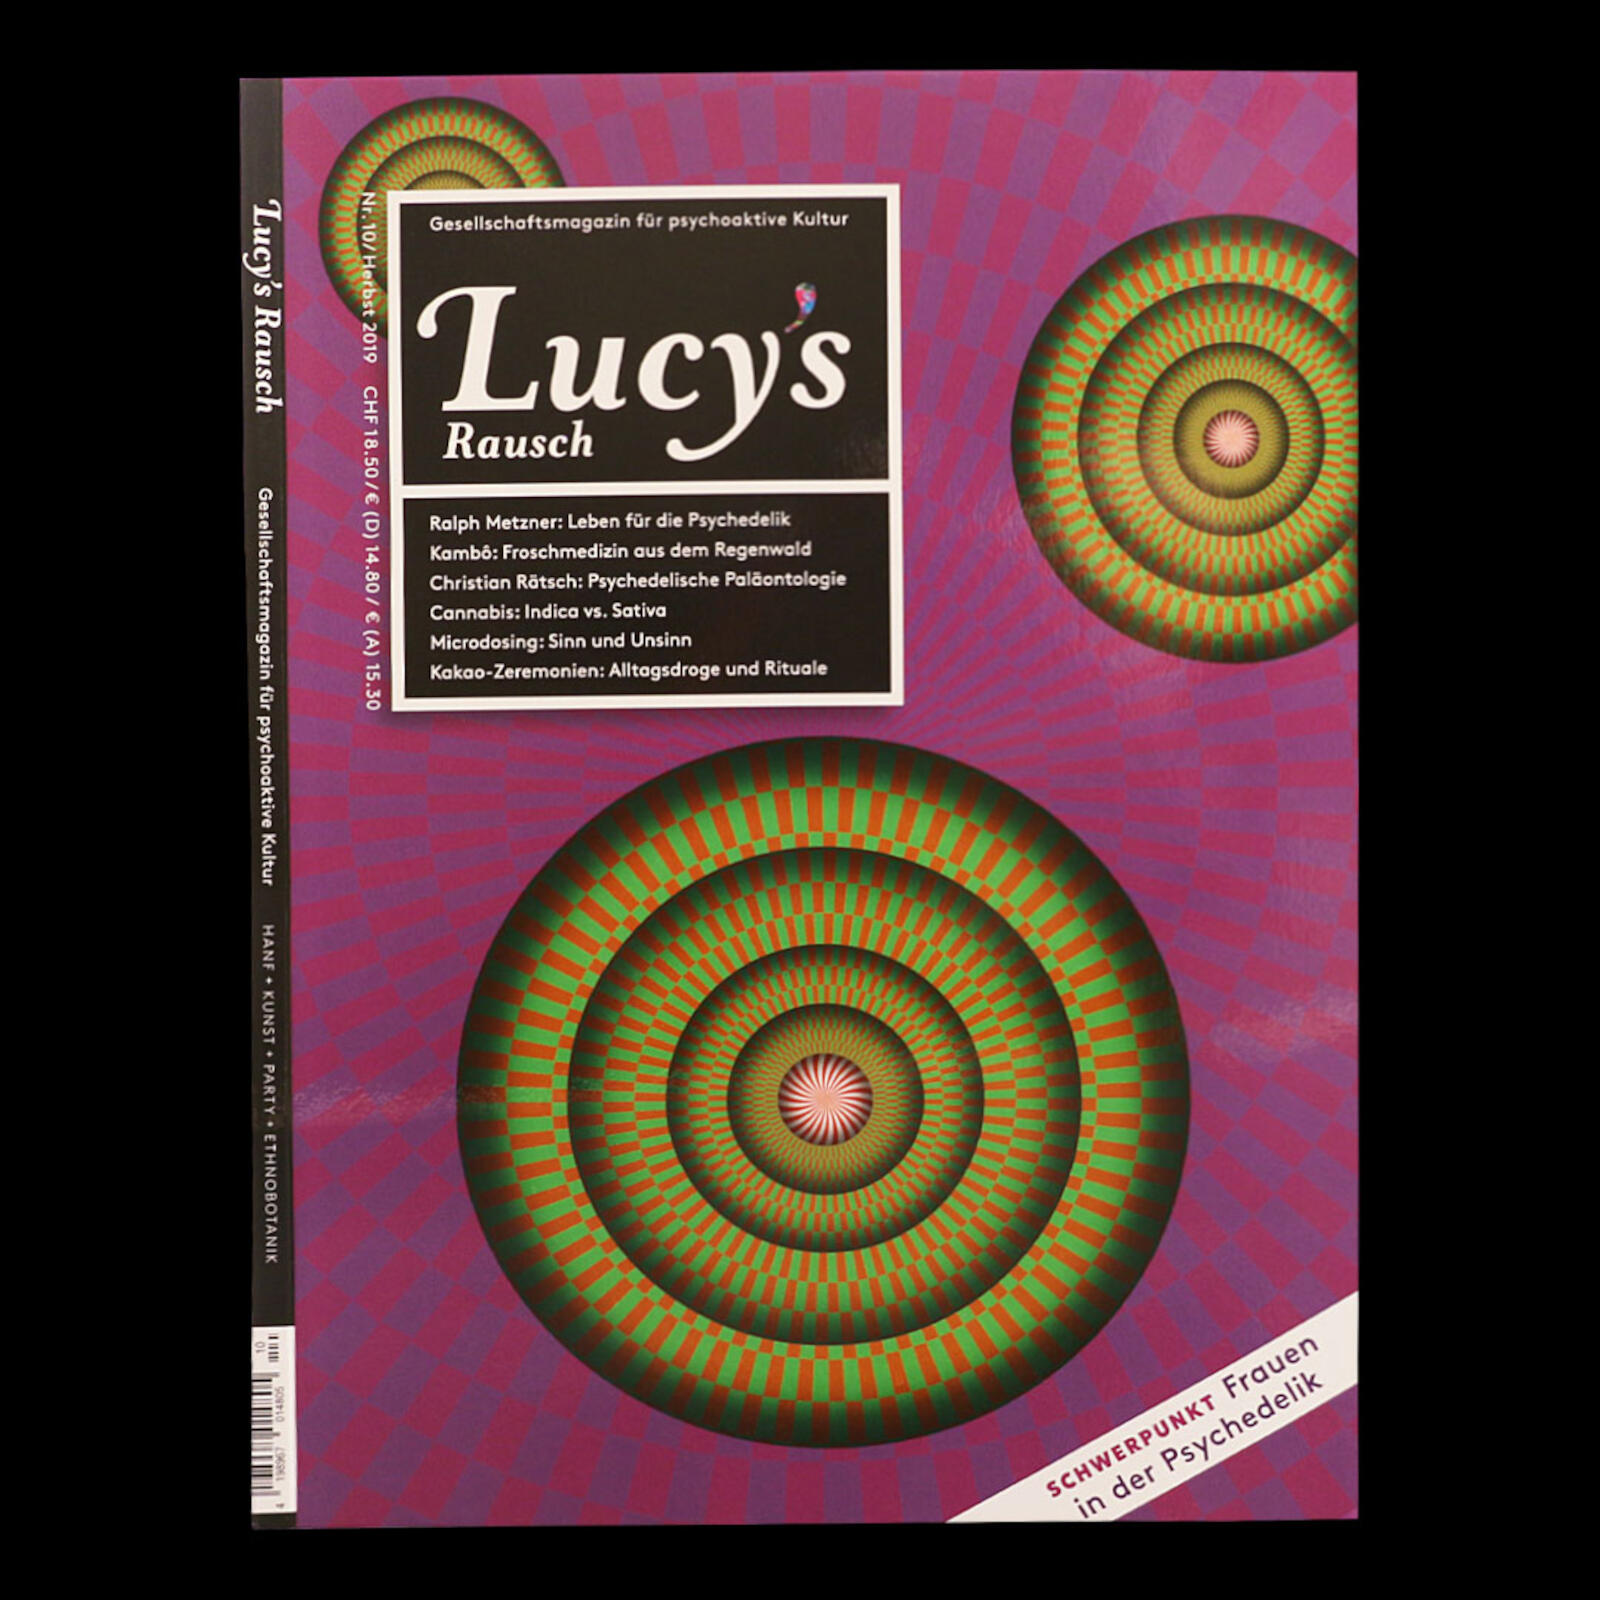 Lucy's Rausch | Volume 10